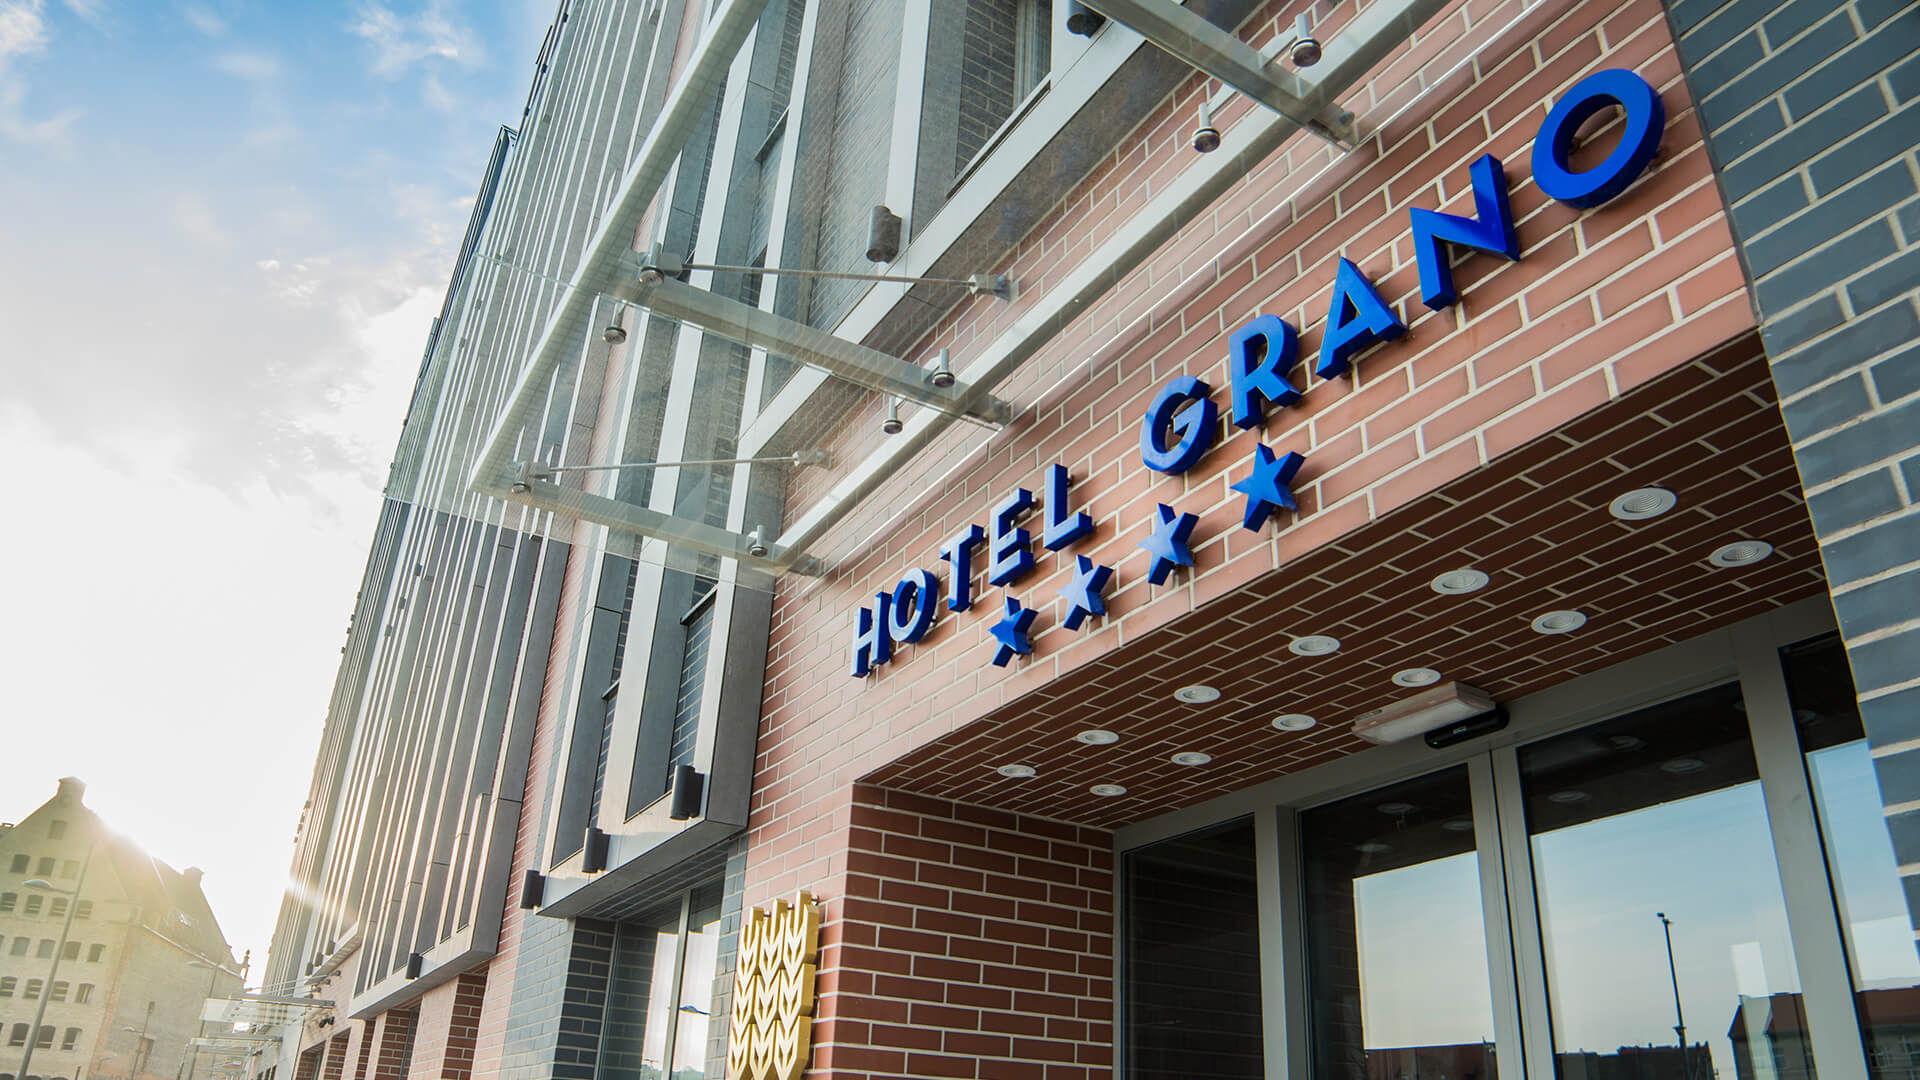 grano résidence hôtel appartements appartements - grano-résidence-spatial lettrage-backlit-blue lettrage-au-dessus-de-l'entrée-de-l'hôtel lettrage-monté-sur-un-cadre lettrage-sur-un-cadre logo de la société-3d-gdansk